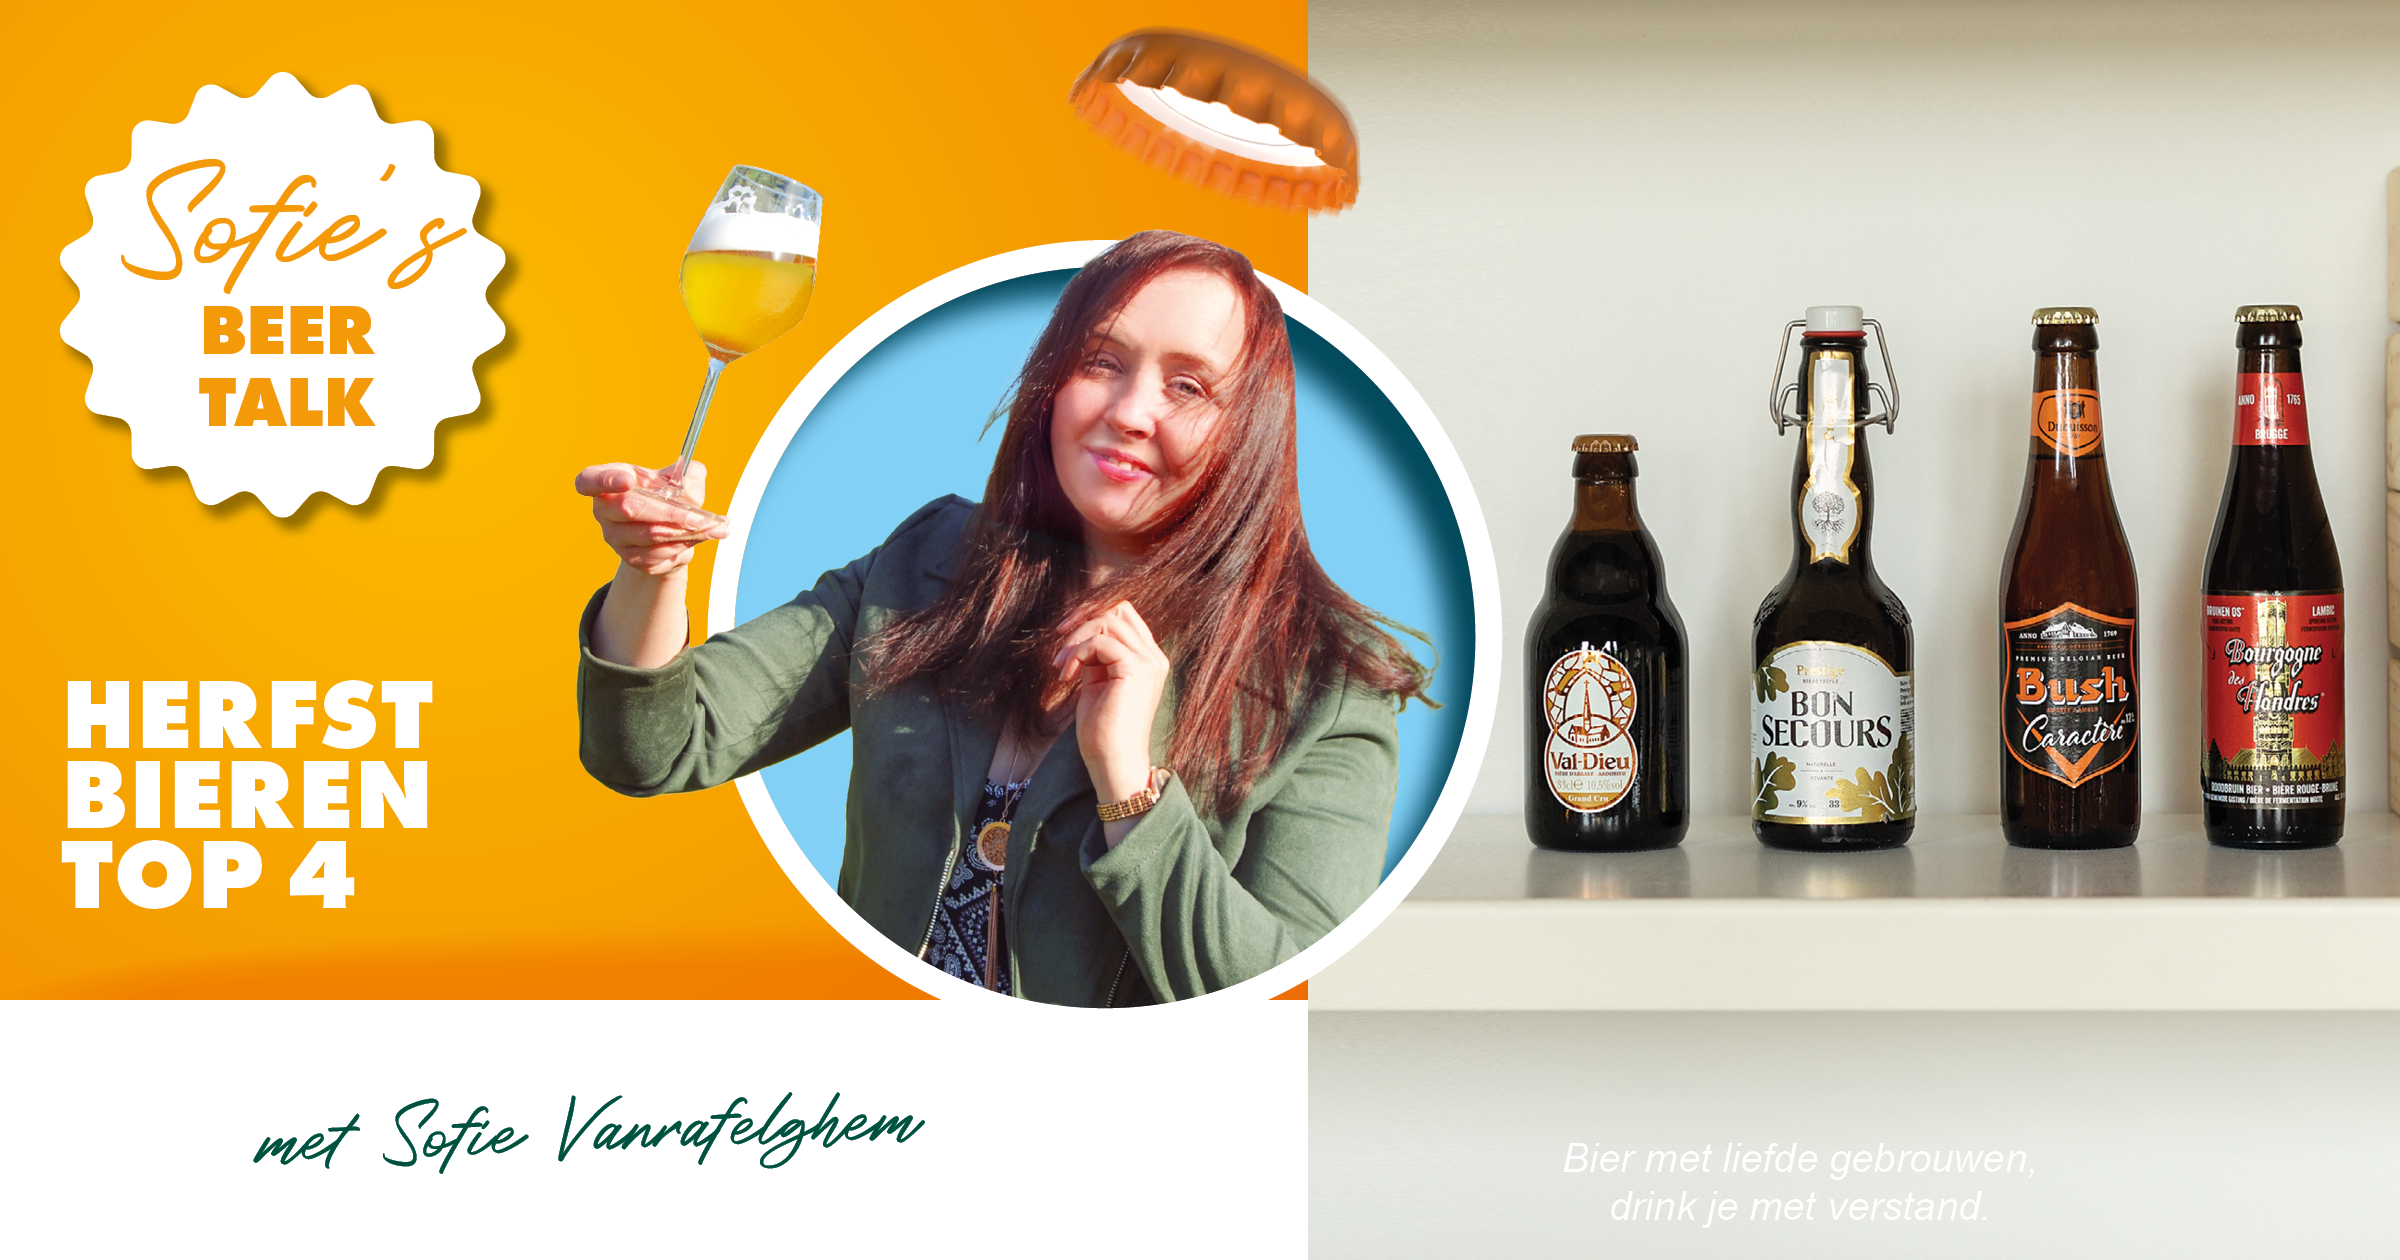 Sofie's Beer Talk: Herfstbieren